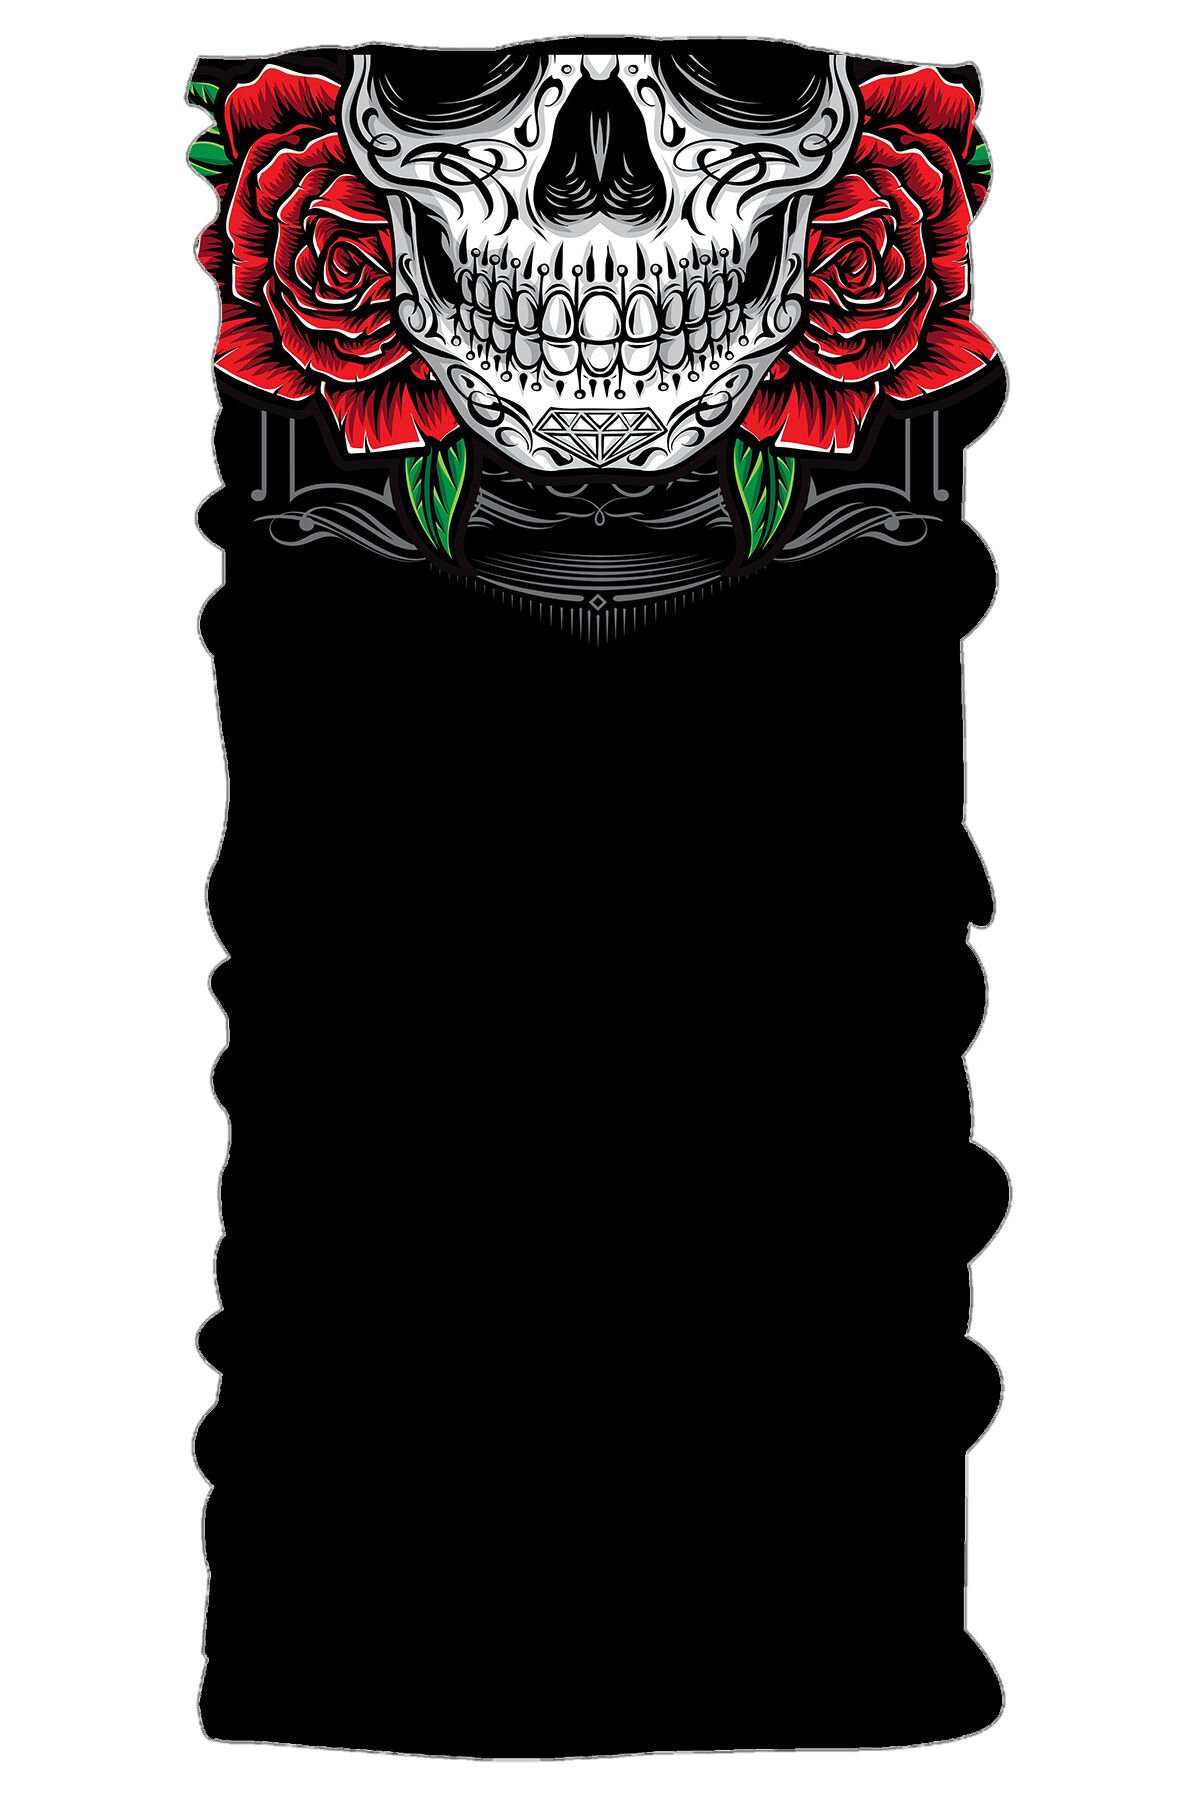 Loco Active Bandana - Roses Skull